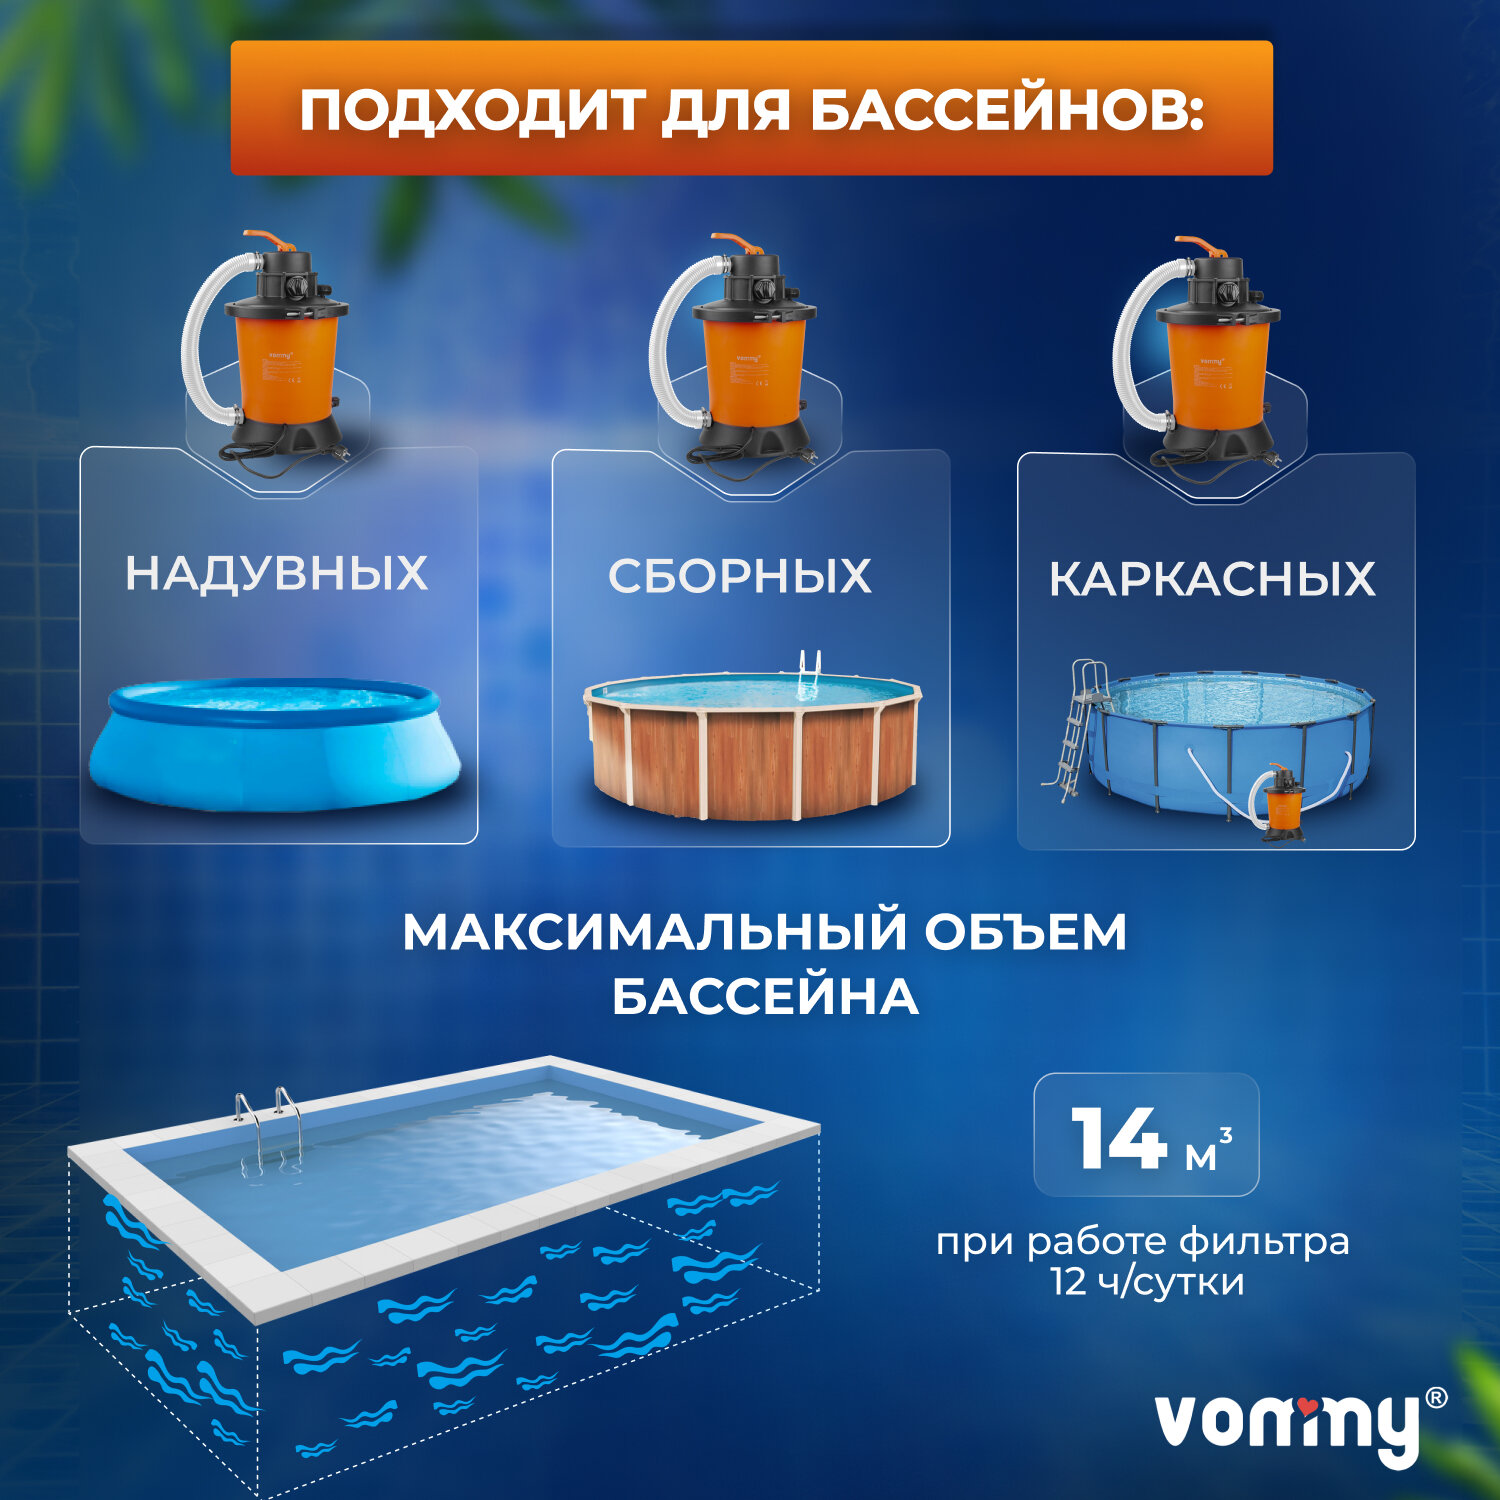 Песочный фильтр-насос (песчаный) Vommy VM-1 EASY- 3,028 куб. м/час для бассейна объемом до 14 куб. м - каркасных, надувных, сборных бассейнов